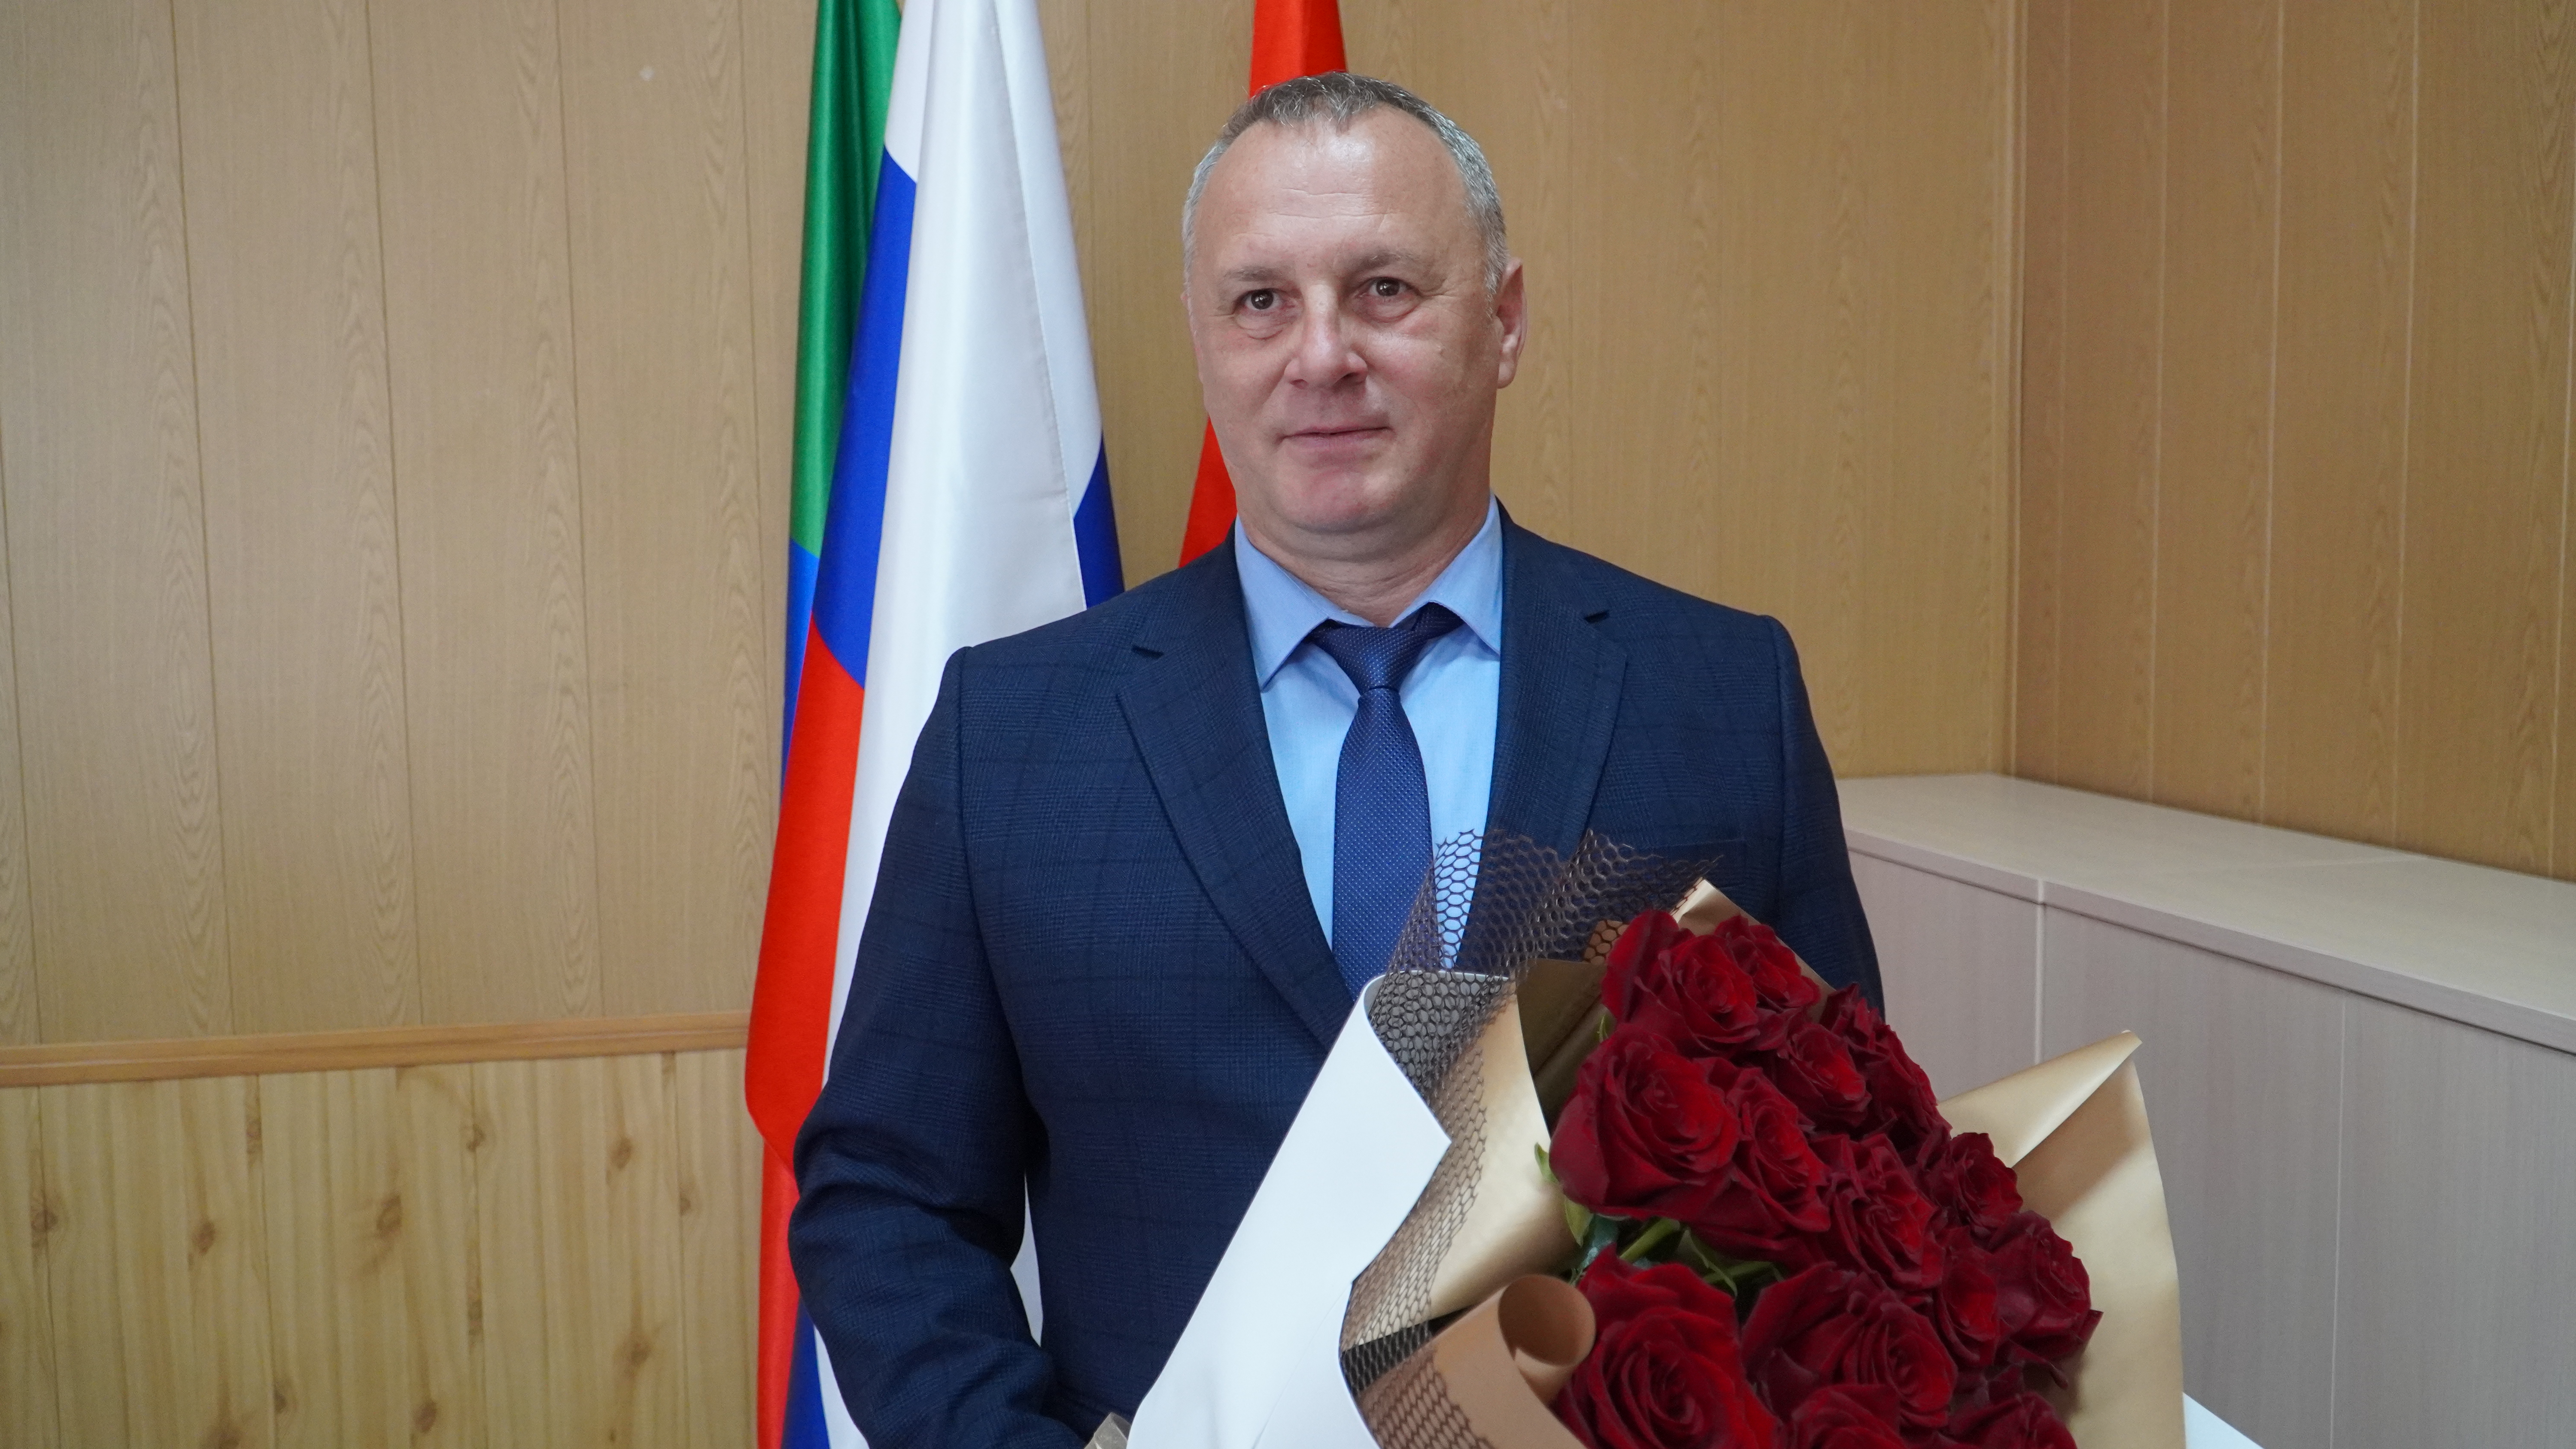 Сегодня отмечает юбилей начальник отдела физической культуры и спорта администрации Борисовского района Сергей Чередниченко.